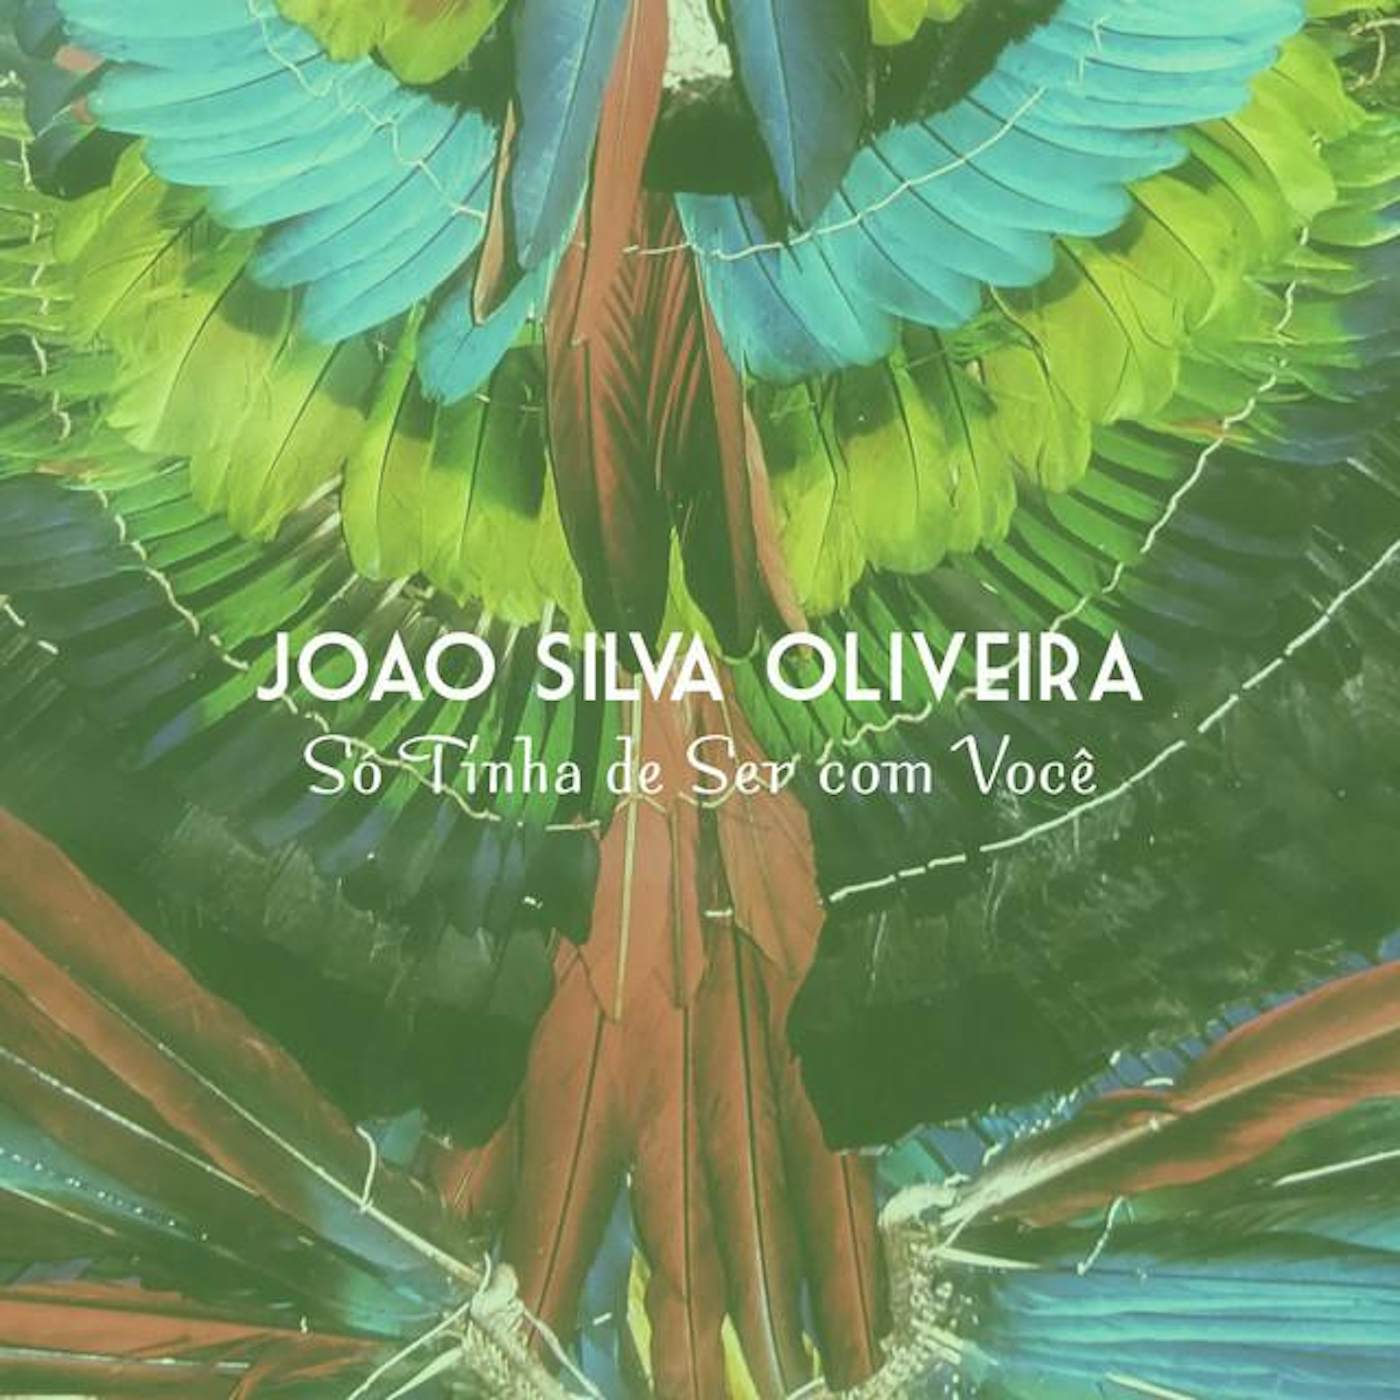 Joao Silva Oliveira